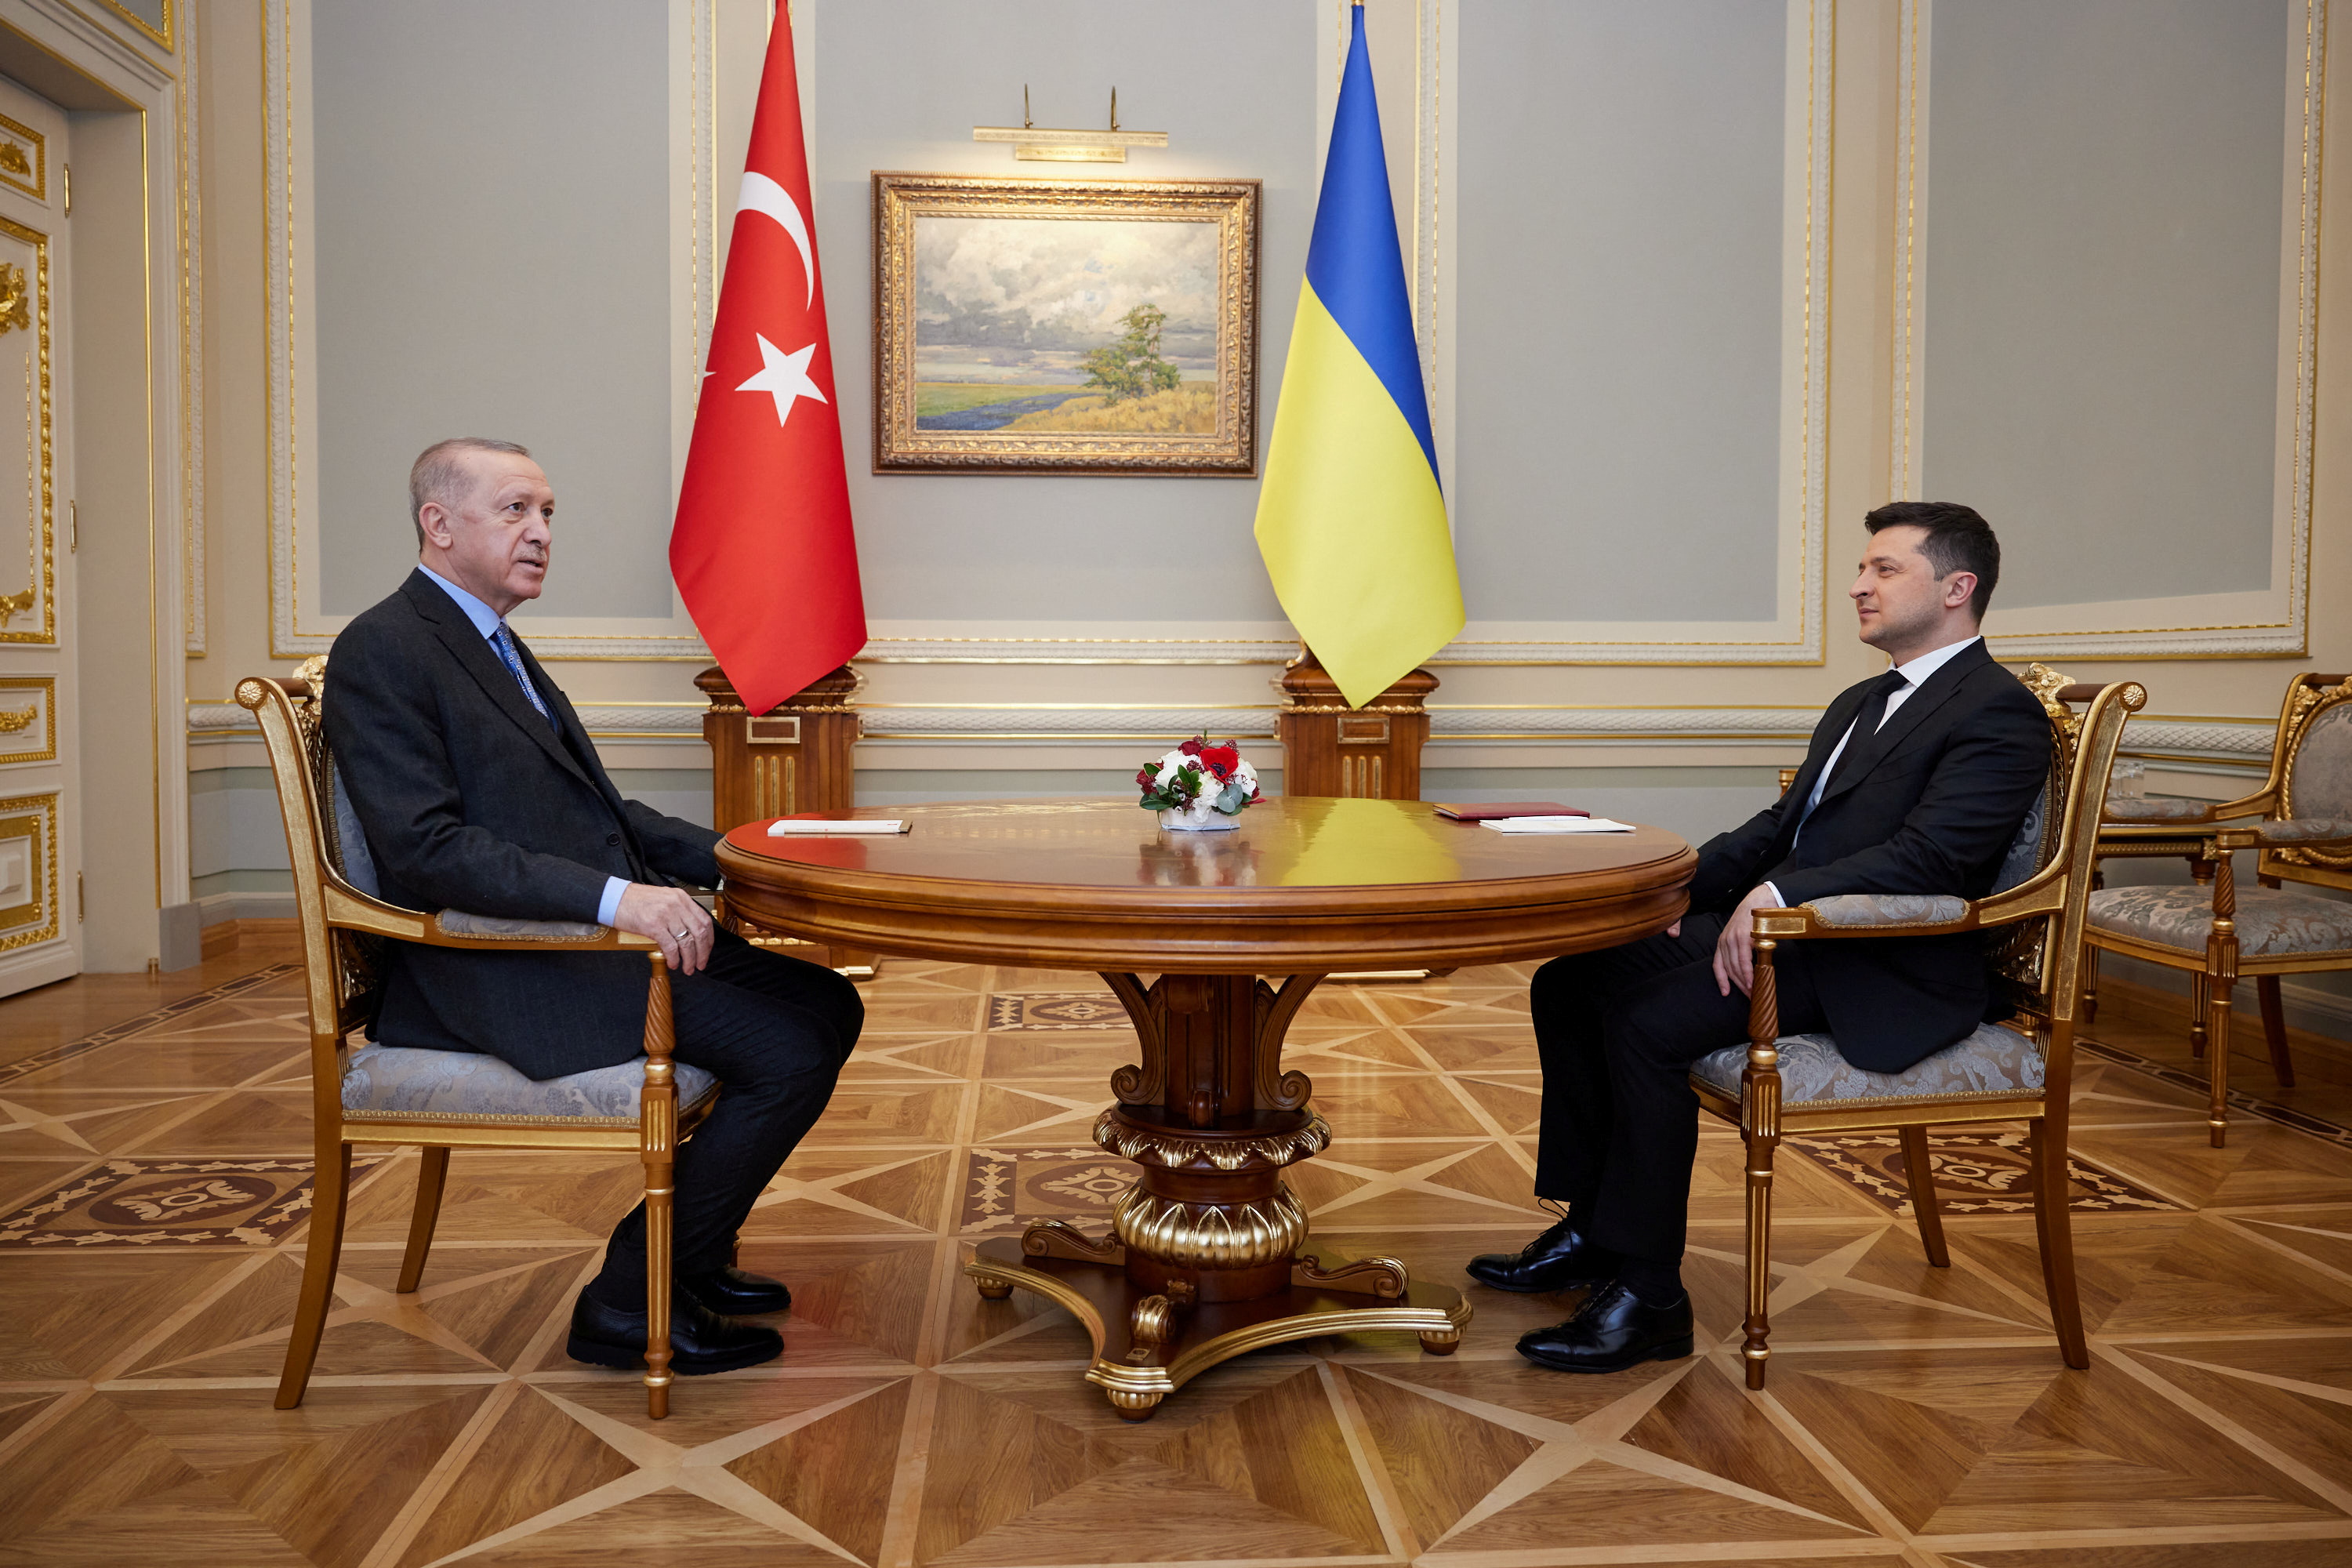 Türkiye Cumhurbaşkanı Tayyip Erdoğan, Ukrayna Cumhurbaşkanı Volodymyr Zelenskiy ile Kiev'de bir araya geldi 3 Şubat 2022. Ukrayna Cumhurbaşkanlığı Basın Servisi/REUTERS aracılığıyla El Notu